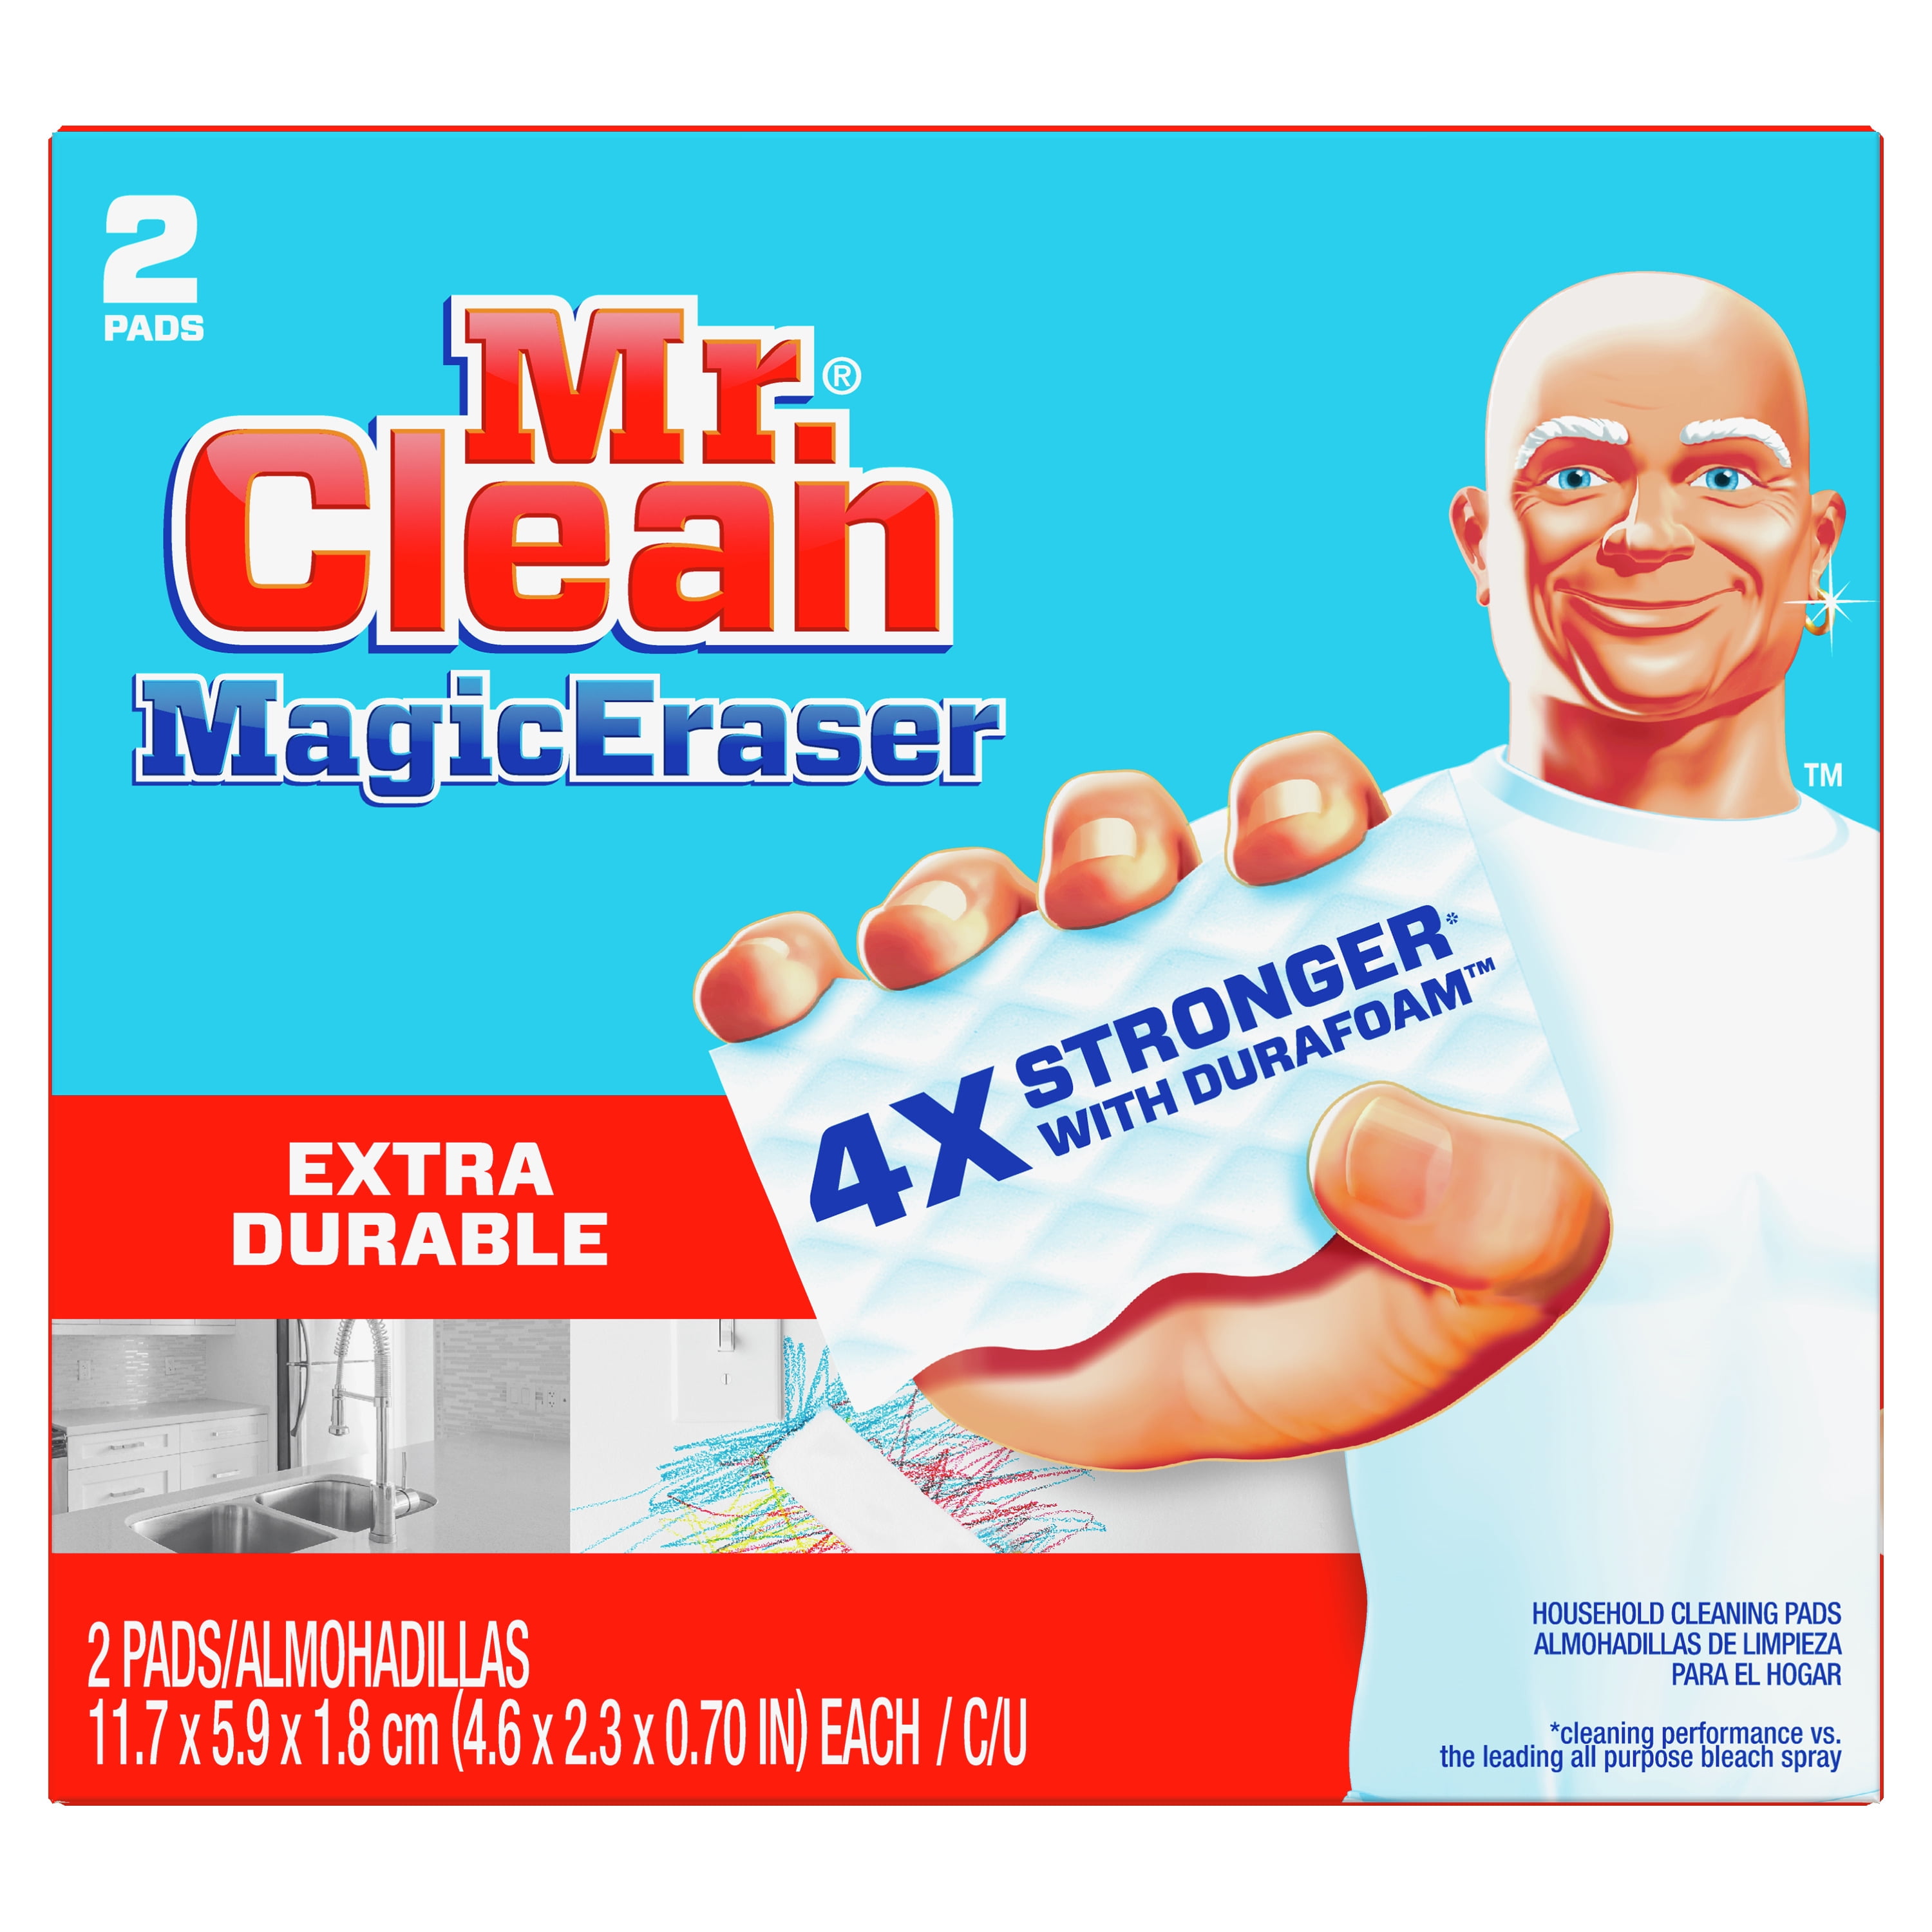 Với khả năng làm sạch đa năng, miếng tẩy sạch Mr. Clean Magic Eraser là sản phẩm được tin dùng trong việc làm sạch mọi bề mặt nhà cửa. Vệ sinh nội thất, lau kính, và loại bỏ các vết bẩn khó chịu là điều dễ dàng với sản phẩm này. Nhấn vào hình ảnh để tìm hiểu thêm về sản phẩm đa năng này.